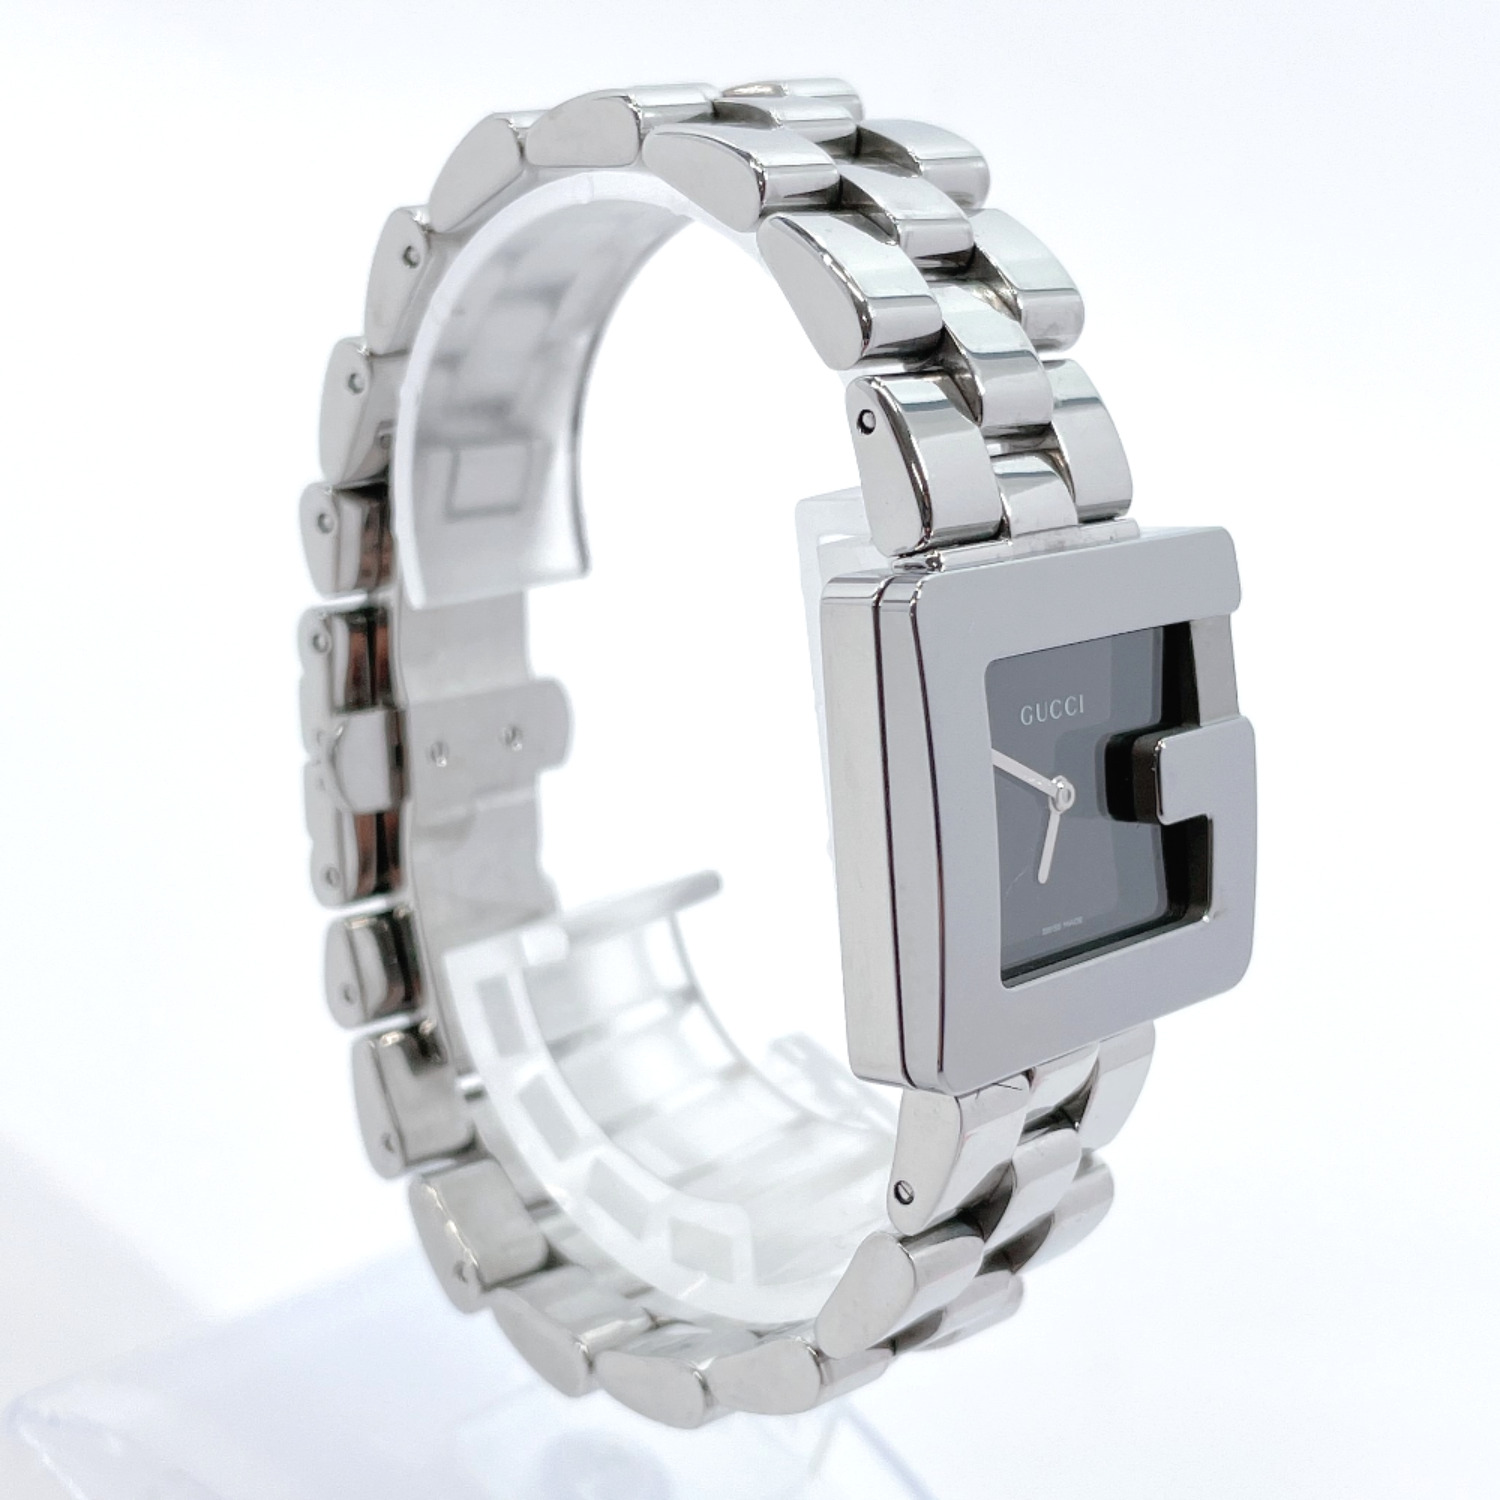 GUCCI Watches 3600J quartz Stainless Steel Women | eBay